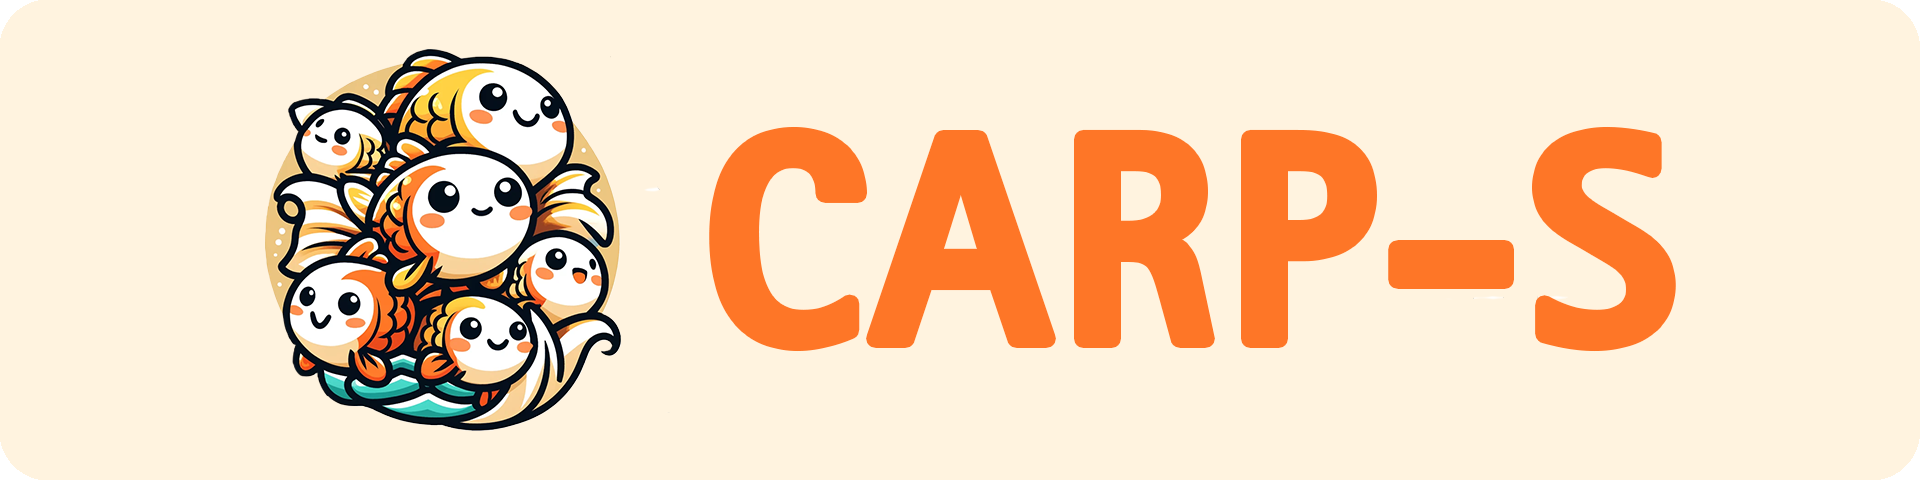 carps_Logo_wide.png